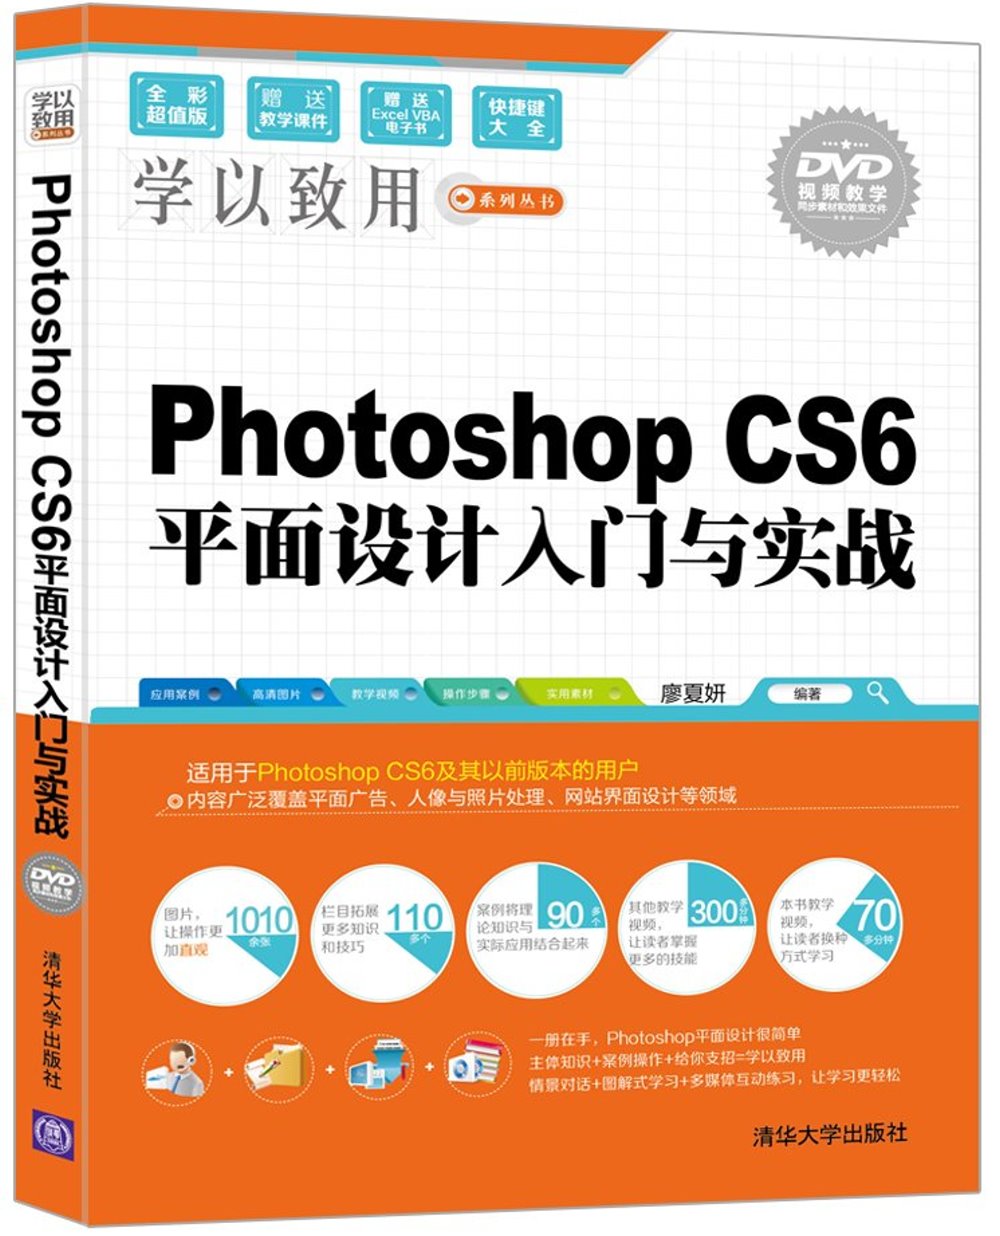 Photoshop CS6平面設計入門與實戰